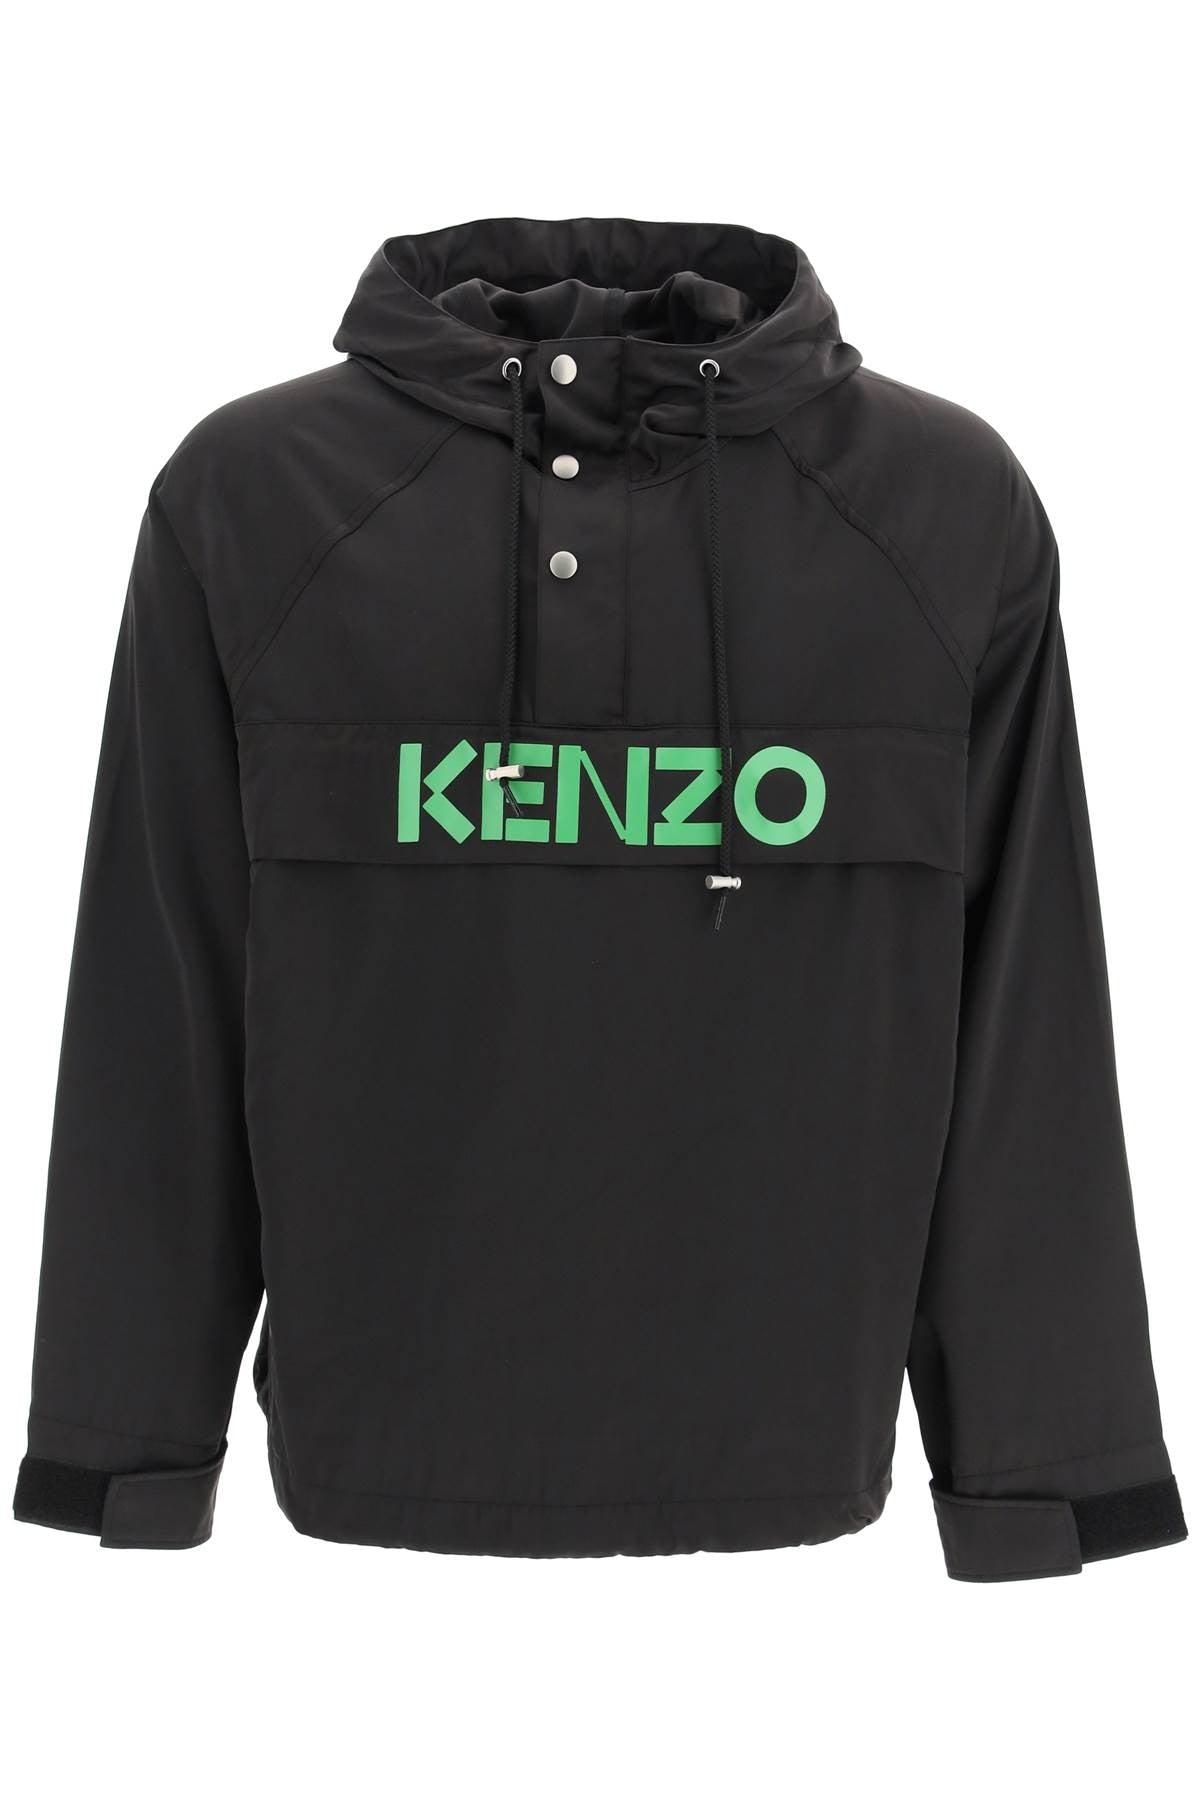 KENZO Logo Anorak in Black for Men | Lyst